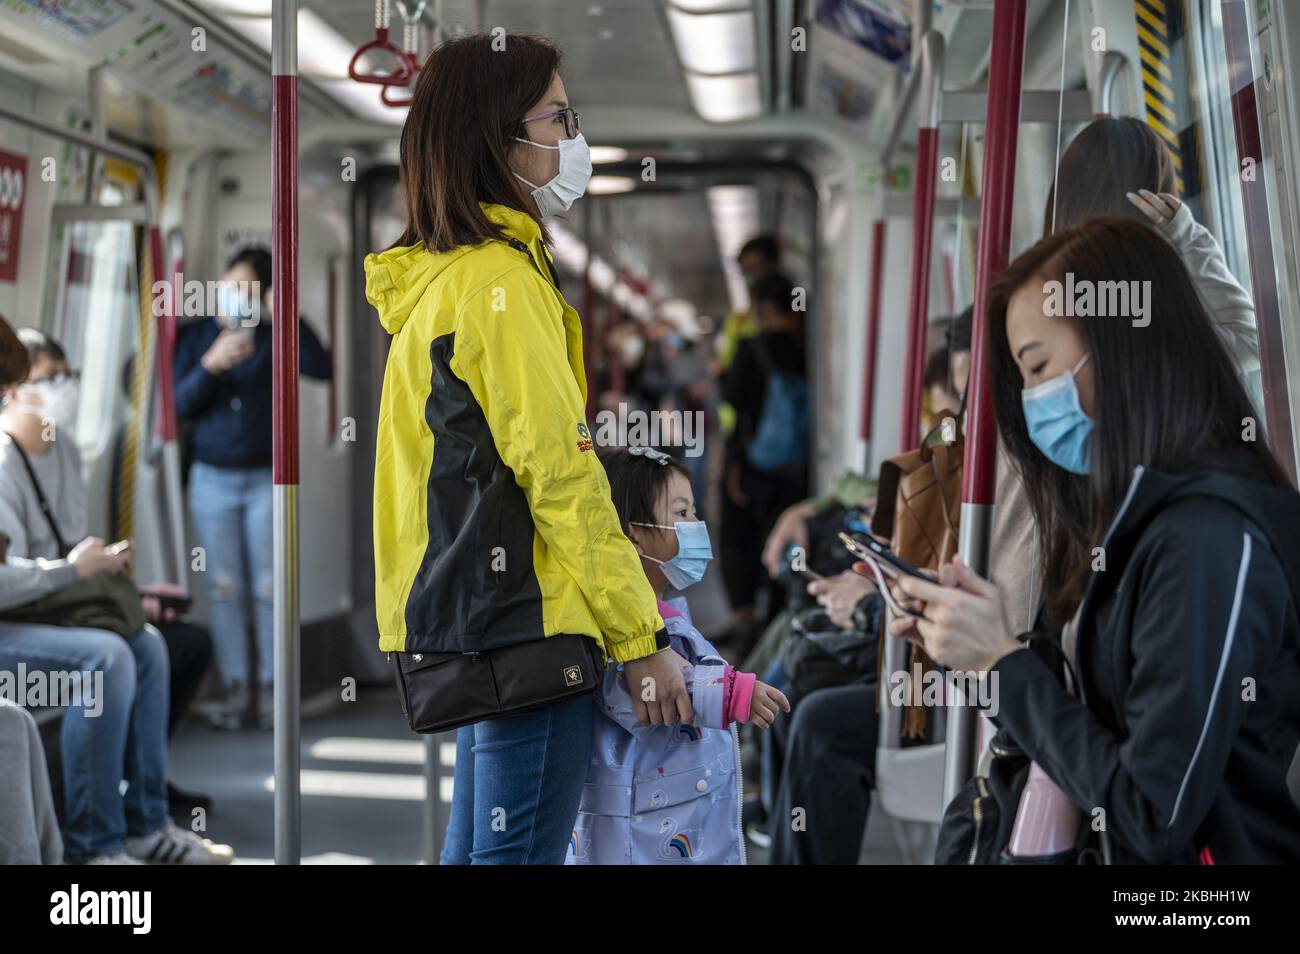 Am 22. Februar 2020 werden in einem MTR-Zug in Hongkong, China, maskierte Menschen gesehen. Das Coronavirus oder Covid-19, das aus Wuhan, China stammt, hat bis heute über 77.000 Menschen infiziert und 2361 Menschen weltweit getötet. (Foto von Vernon Yuen/NurPhoto) Stockfoto